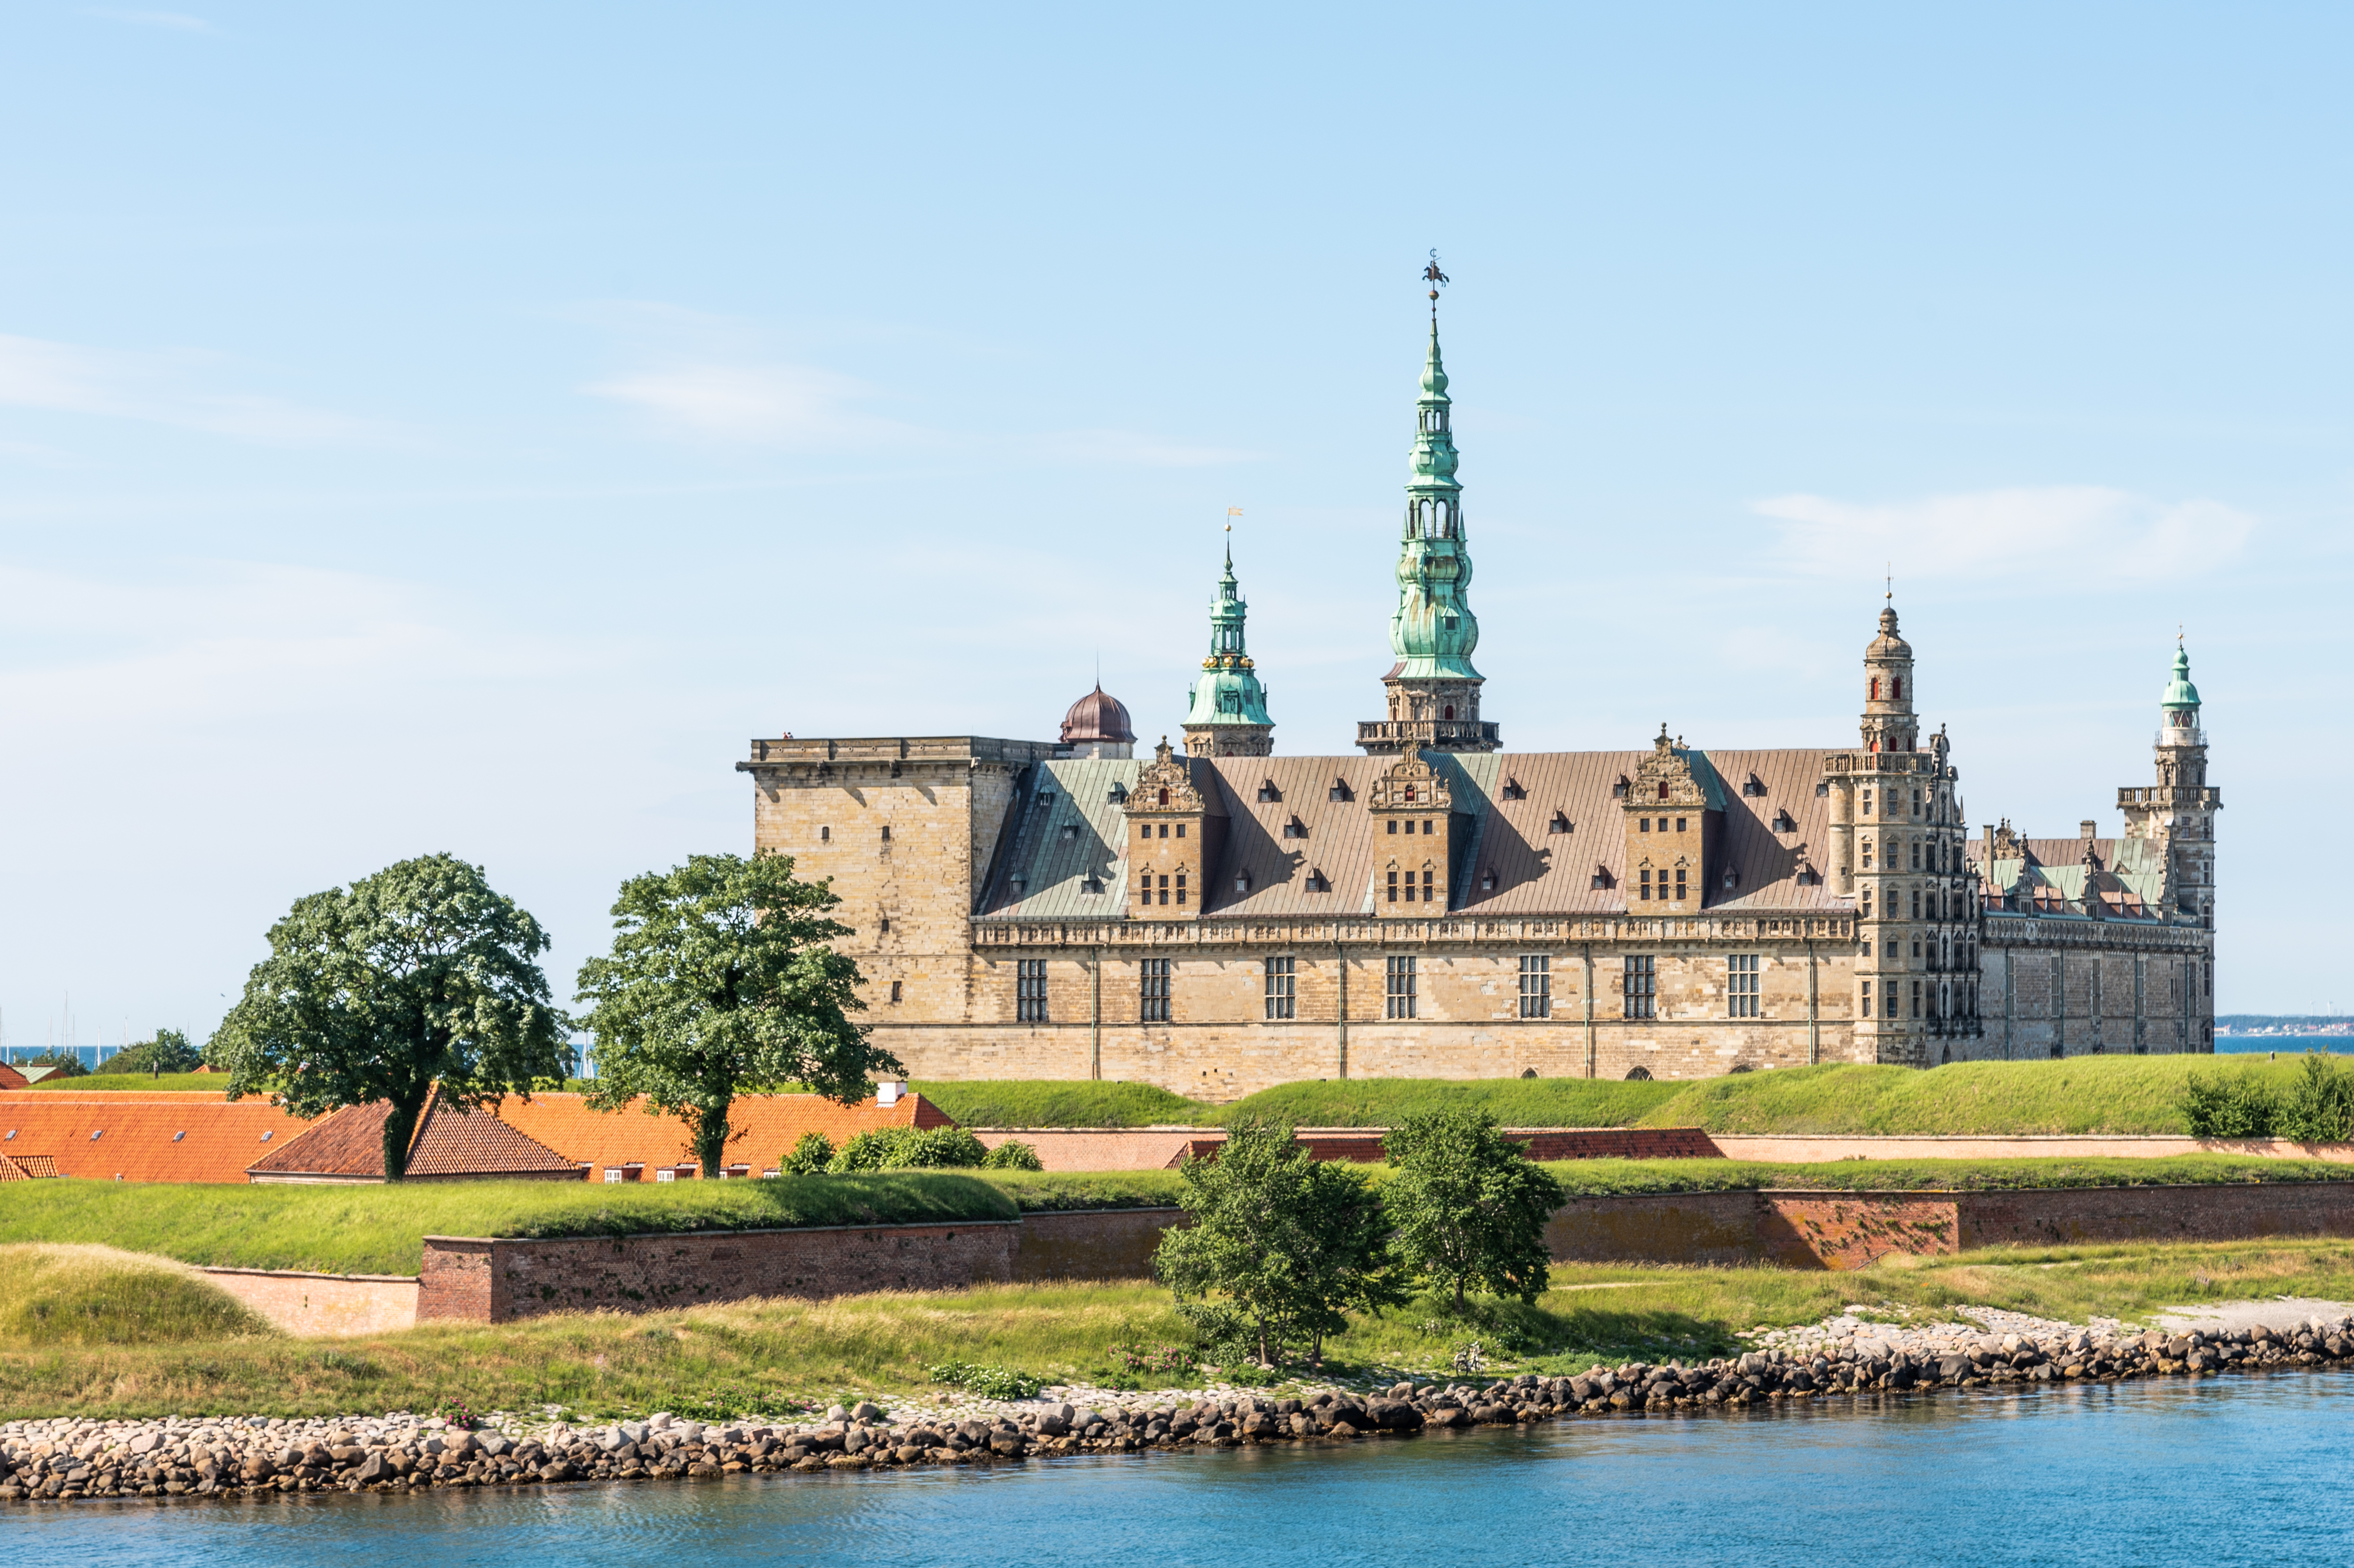 Oplev Kronborg slot i Helsingør på denne opdagelsestur